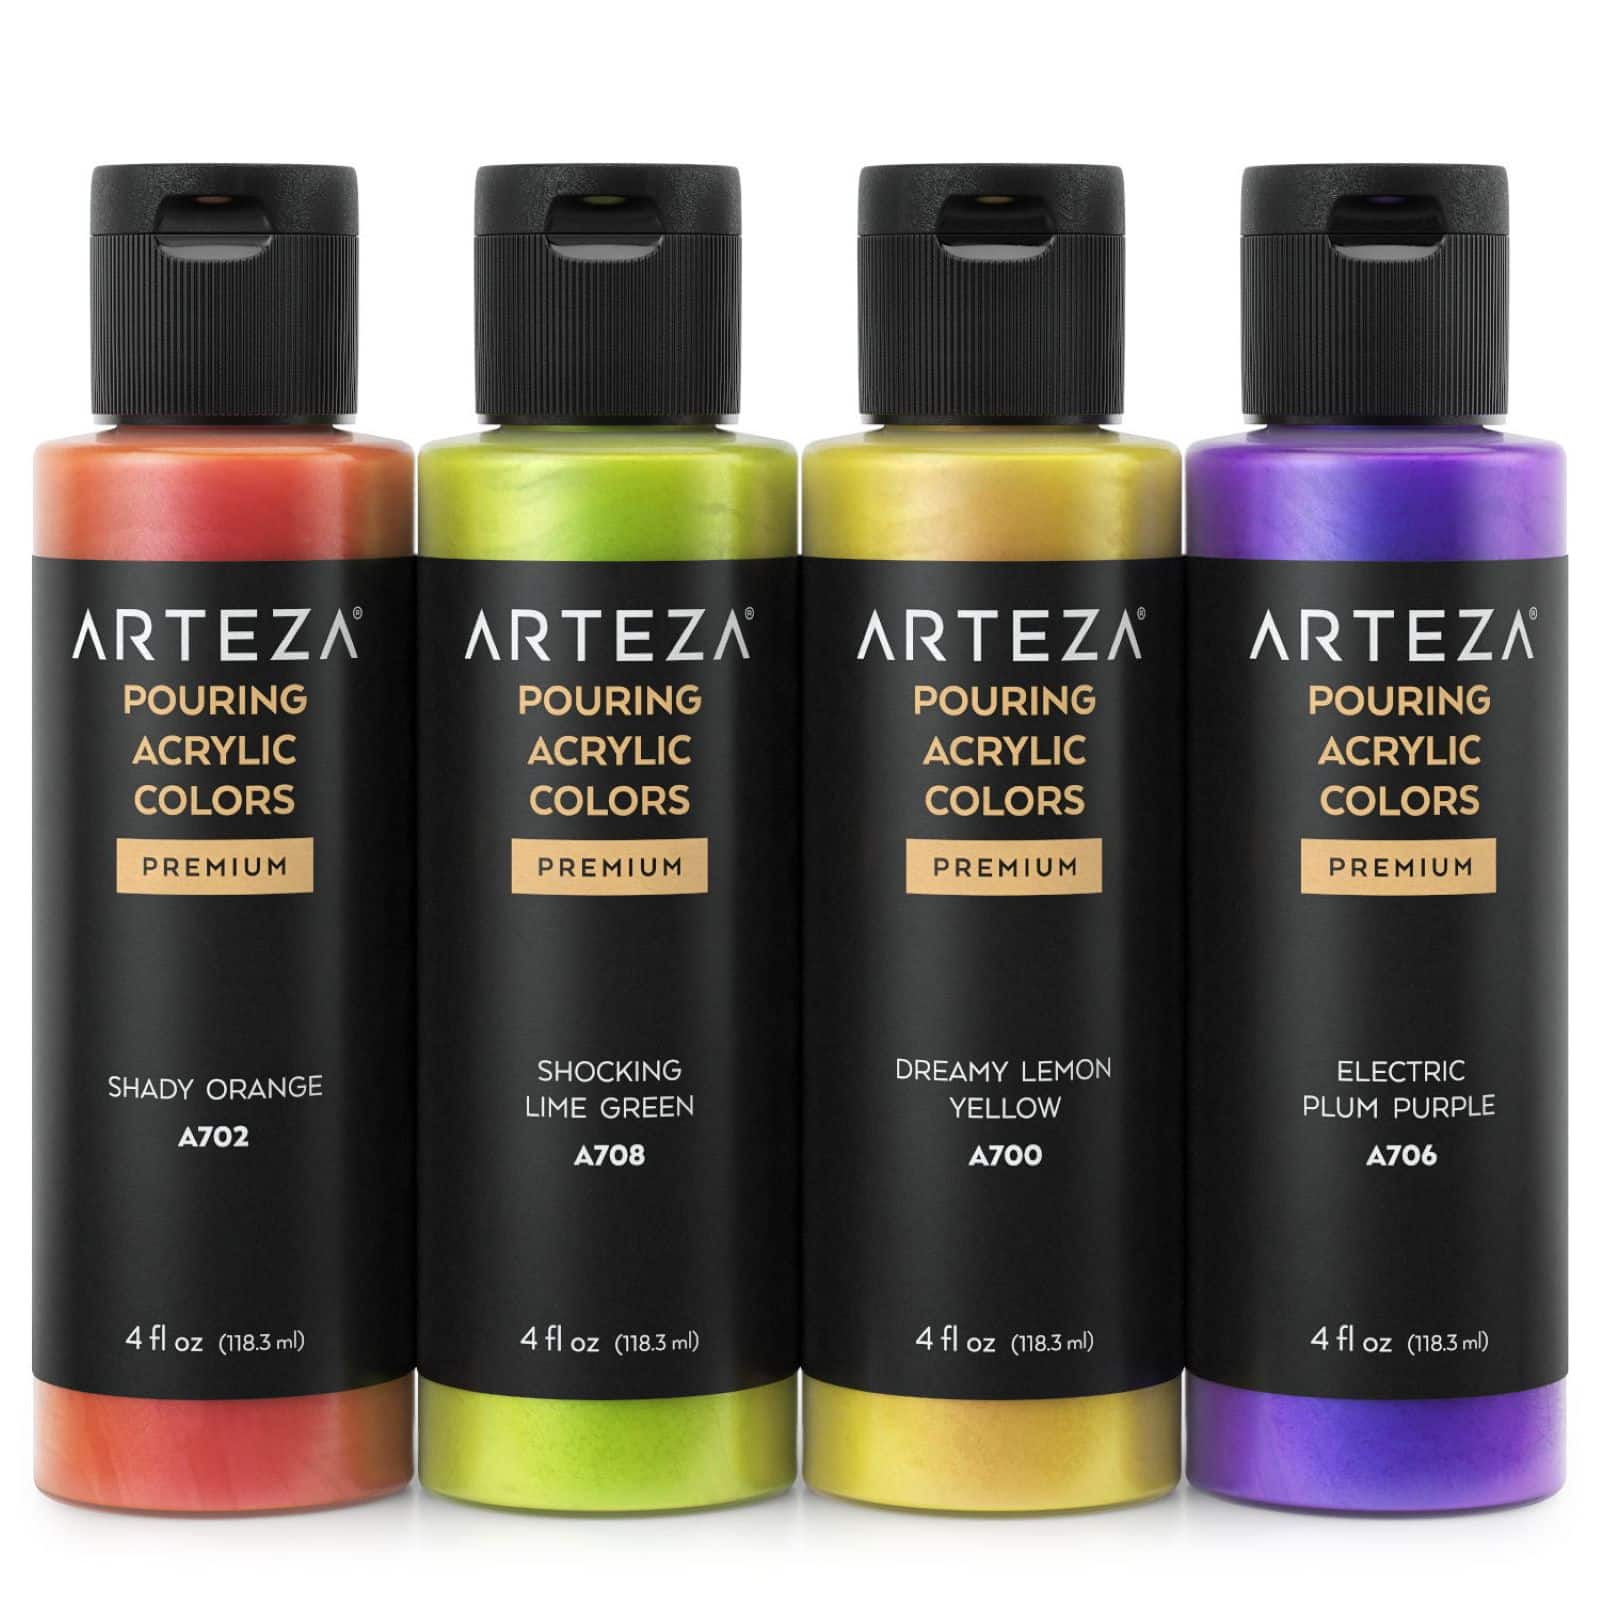 Arteza&#xAE; 4 Color Iridescent Sherbet Tones Acrylic Pouring Paint Set